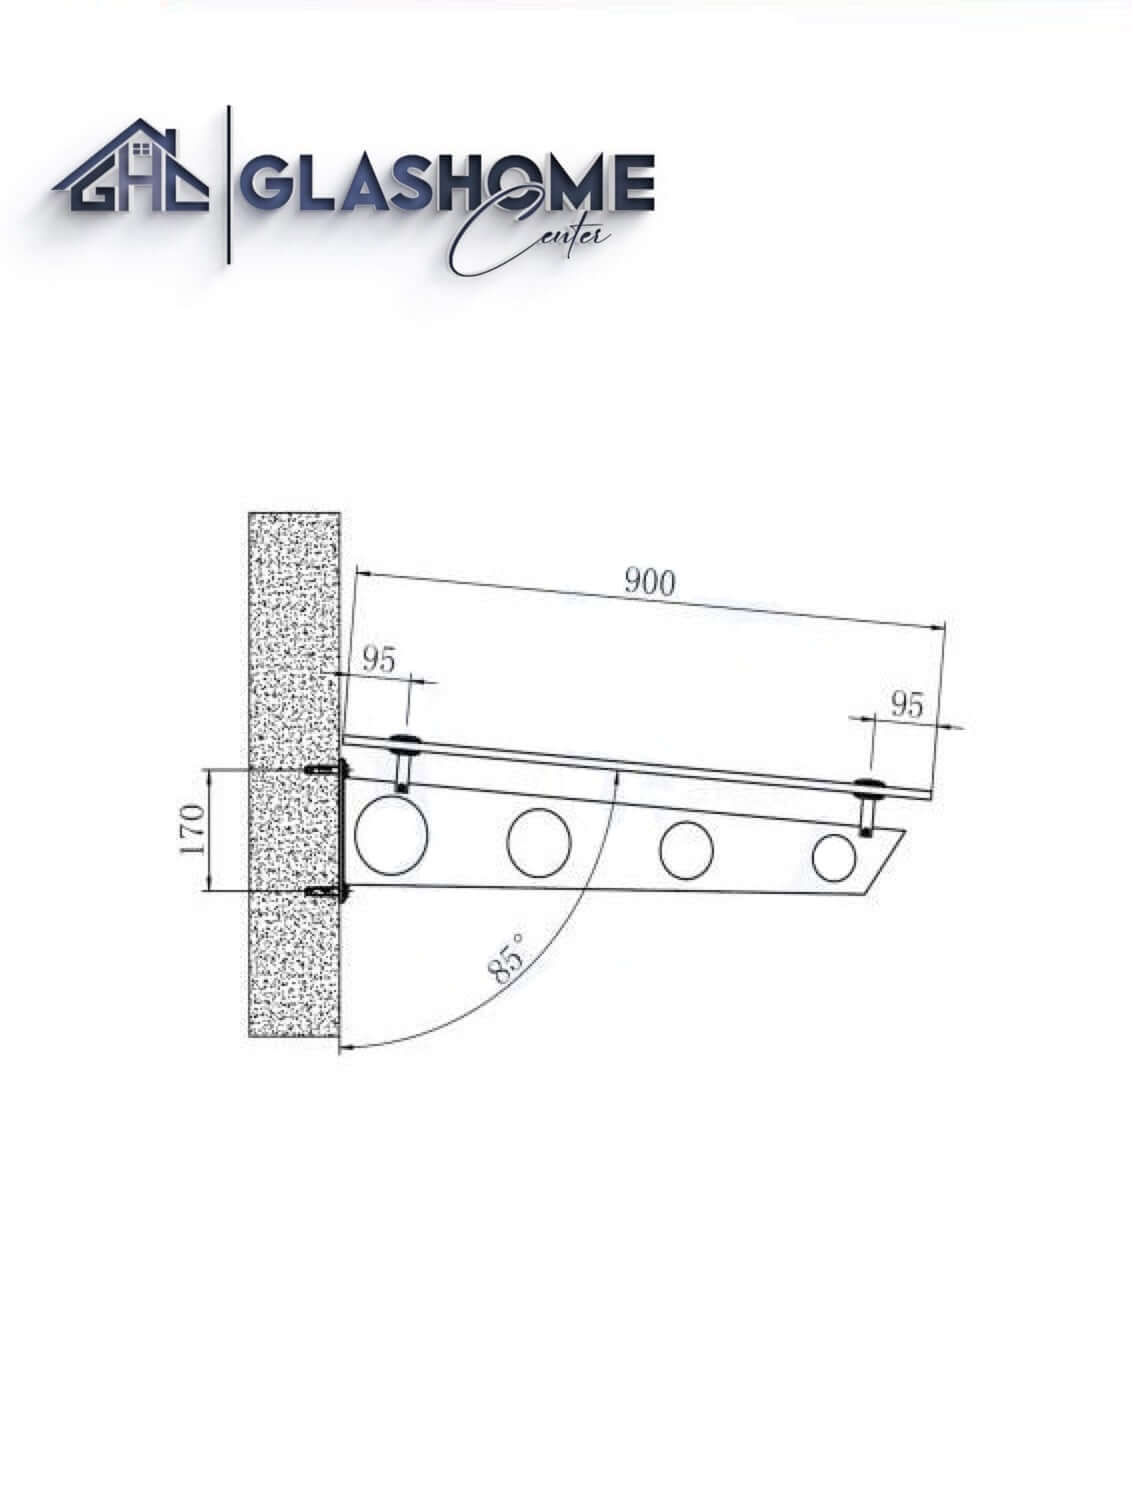 GlasHomeCenter - Glasvordach - Grauglas - 200x90cm - 13,1mm VSG - incl. 2 Edelstahlhalterungen variante "Stoccolma"